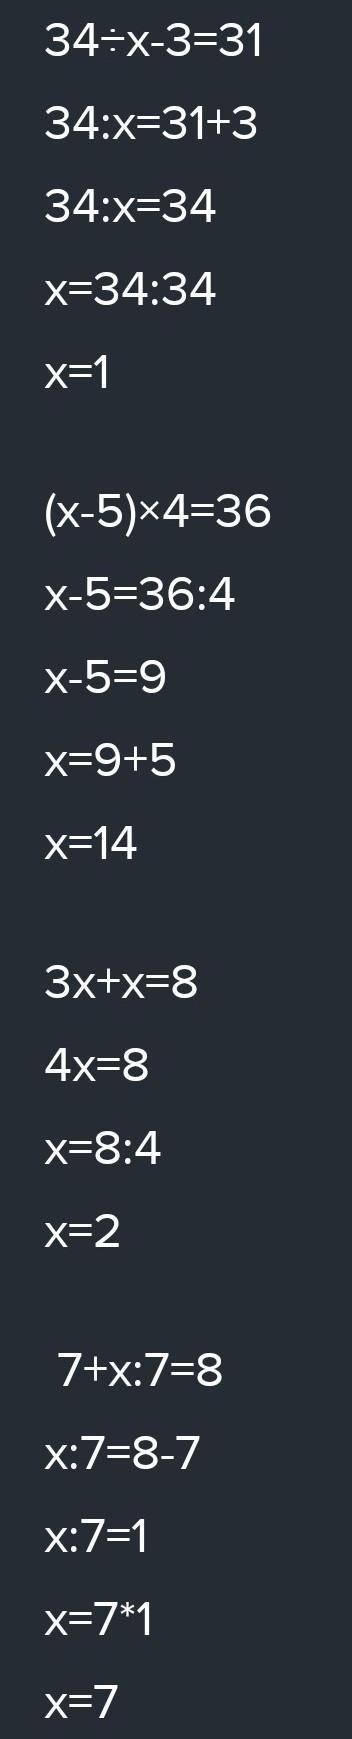 Решите задания 34:х -3=31 (х-5)*4=36 3х+х=8 7+х:7=8 (84-х):5 +42=46